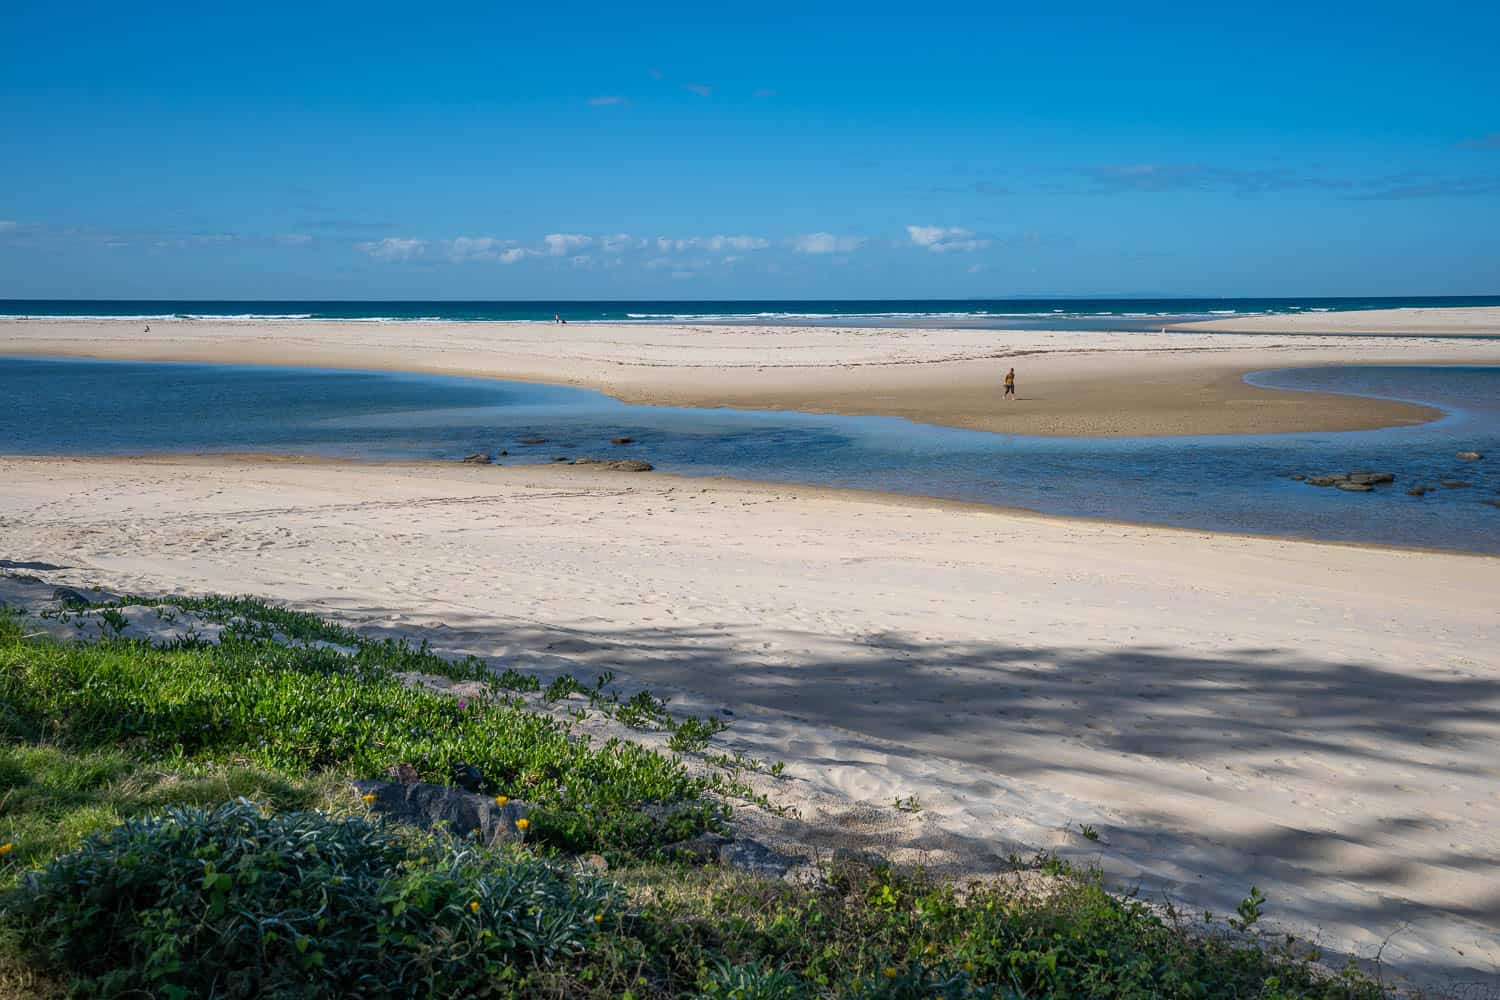 Bulcock beach, Caloundra, Queensland, Australia